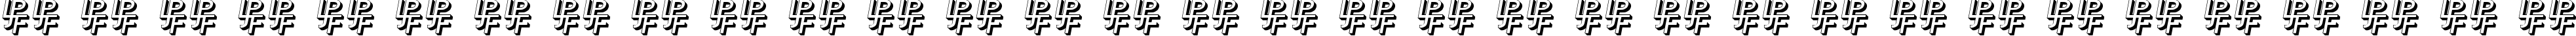 Пример написания русского алфавита шрифтом Bolton Sans Embossed